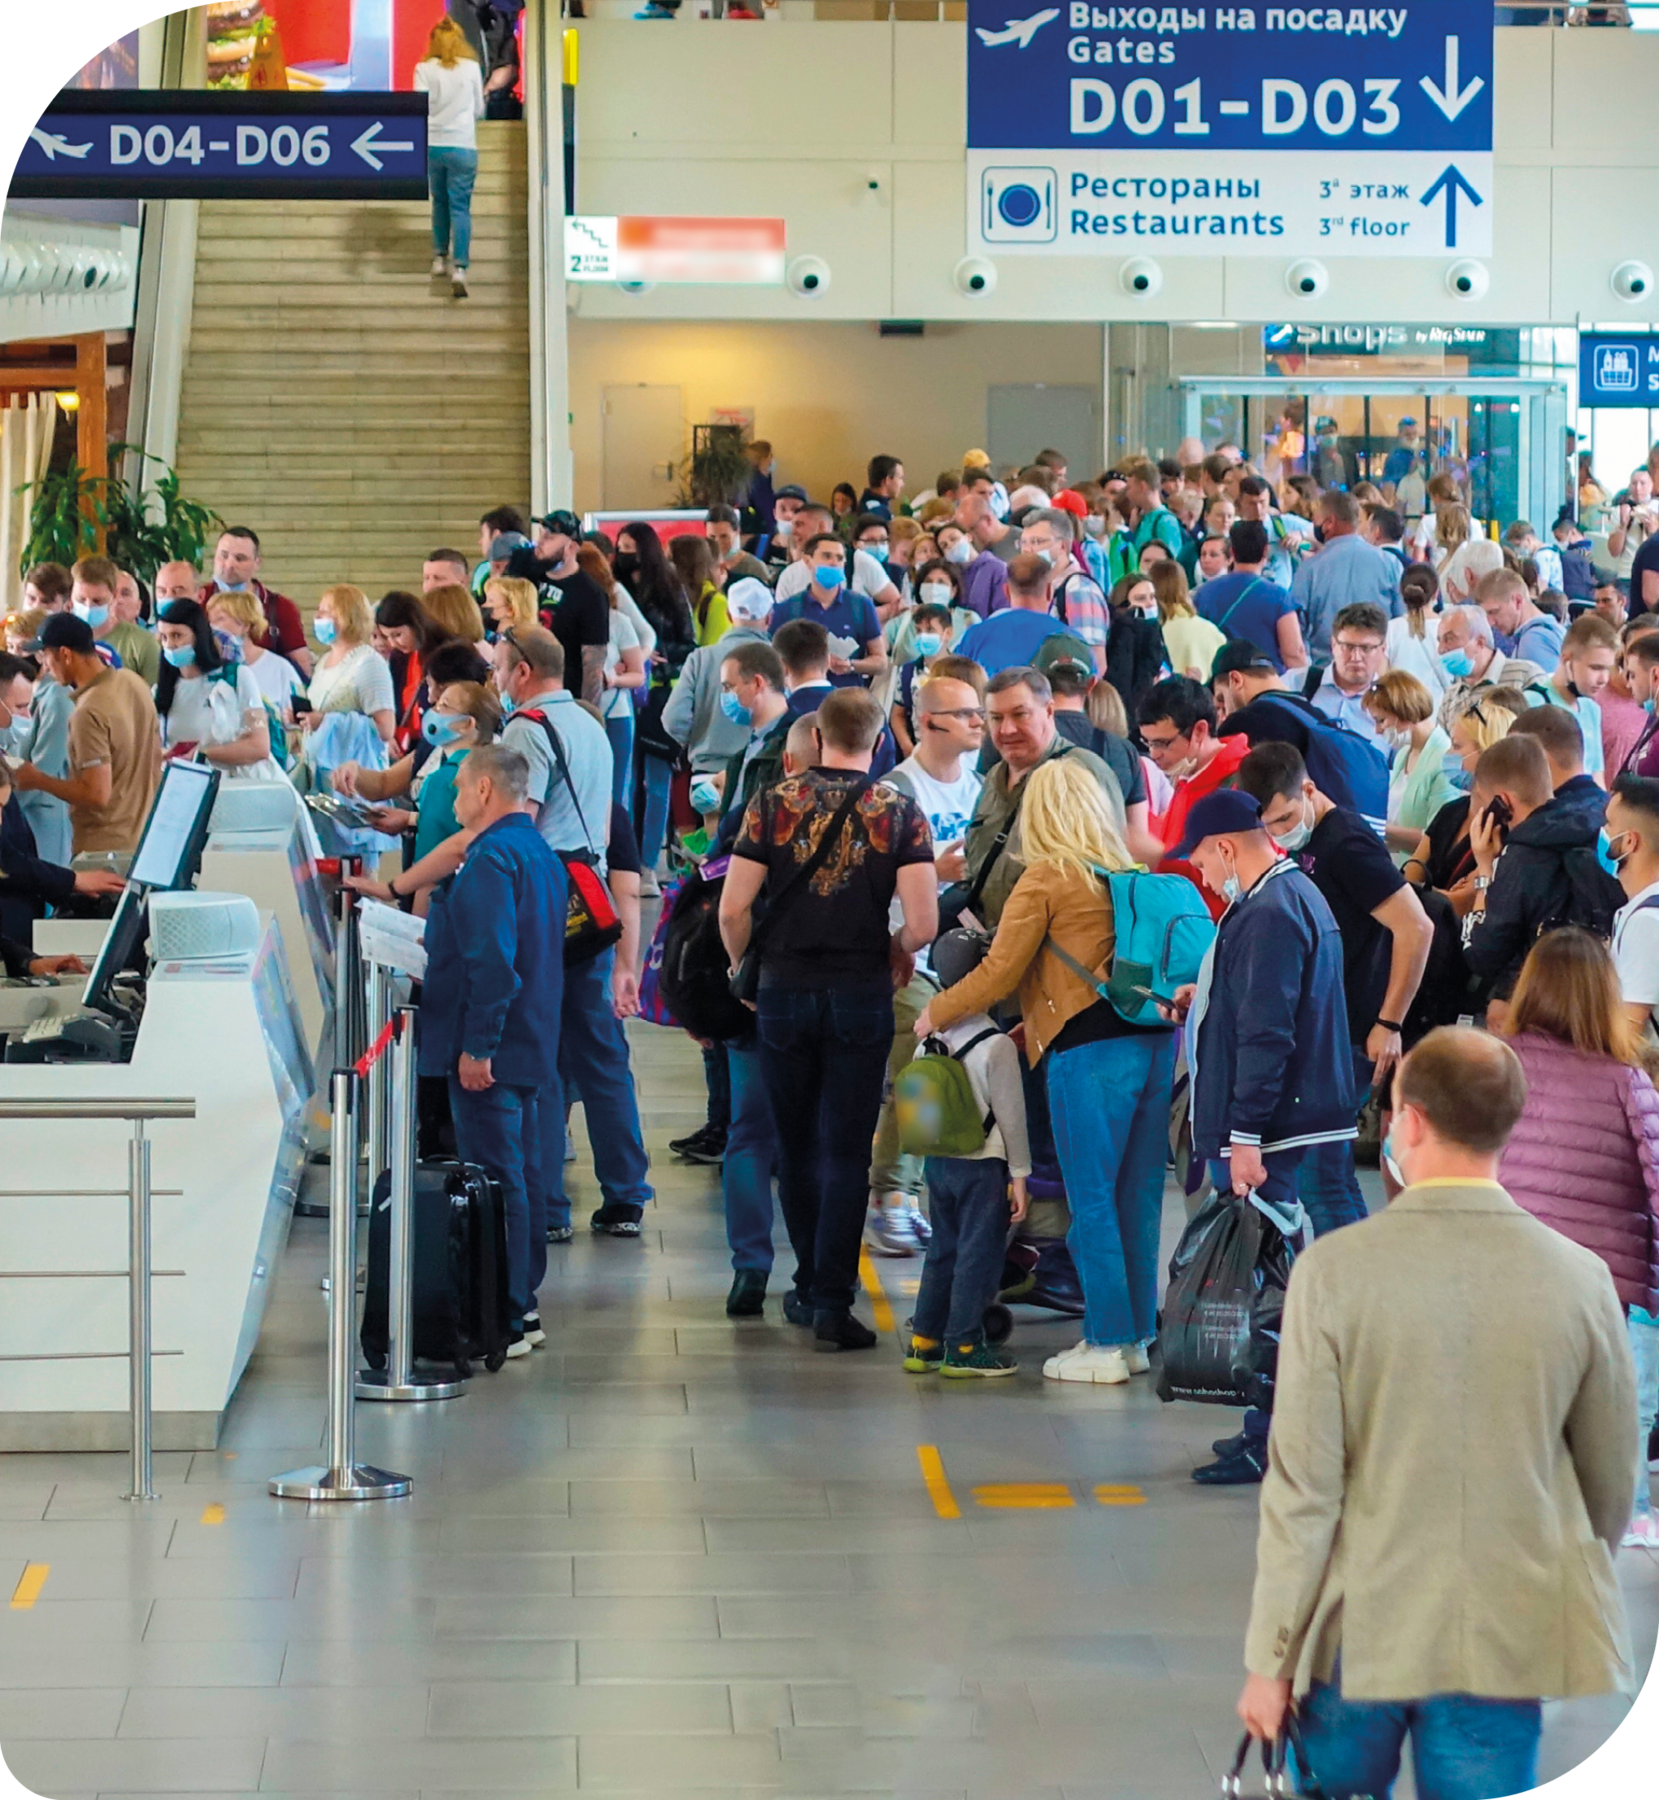 Fotografia. Muitas pessoas reunidas em um aeroporto. Eles estão em uma fila em frente a guichês. Ao fundo há placas.